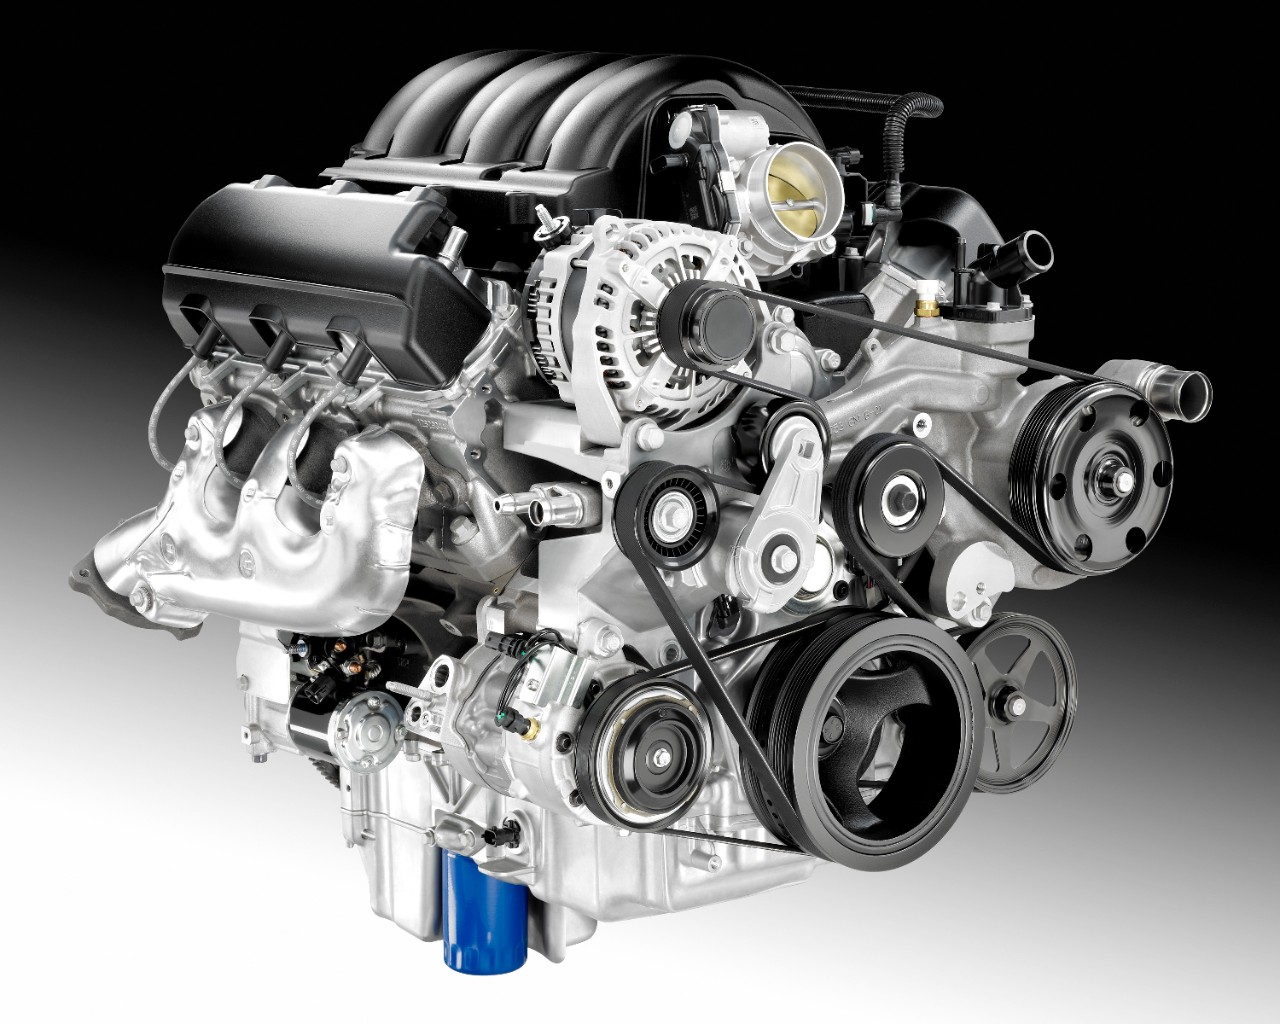 GM Shelves Vortec Engine Family Name, Introduces 